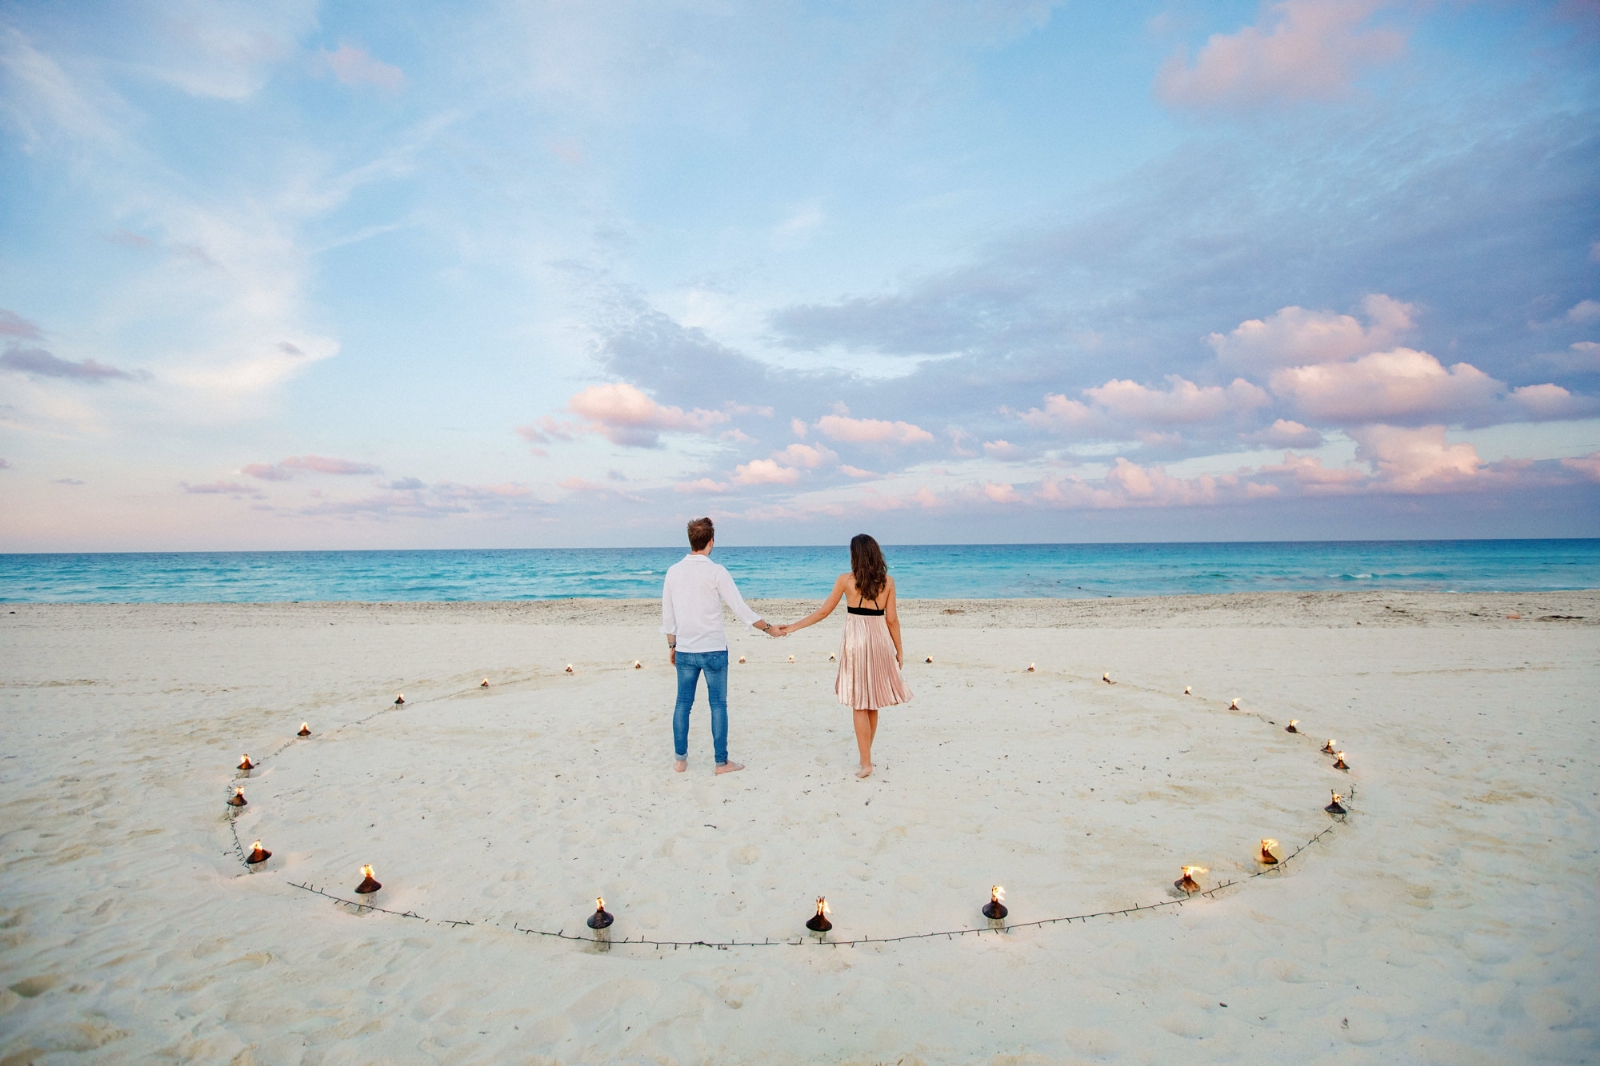 Quintana Roo superó a Yucatán y a Campeche en la cifra de divorcios en 2020, según datos publicados por el Inegi